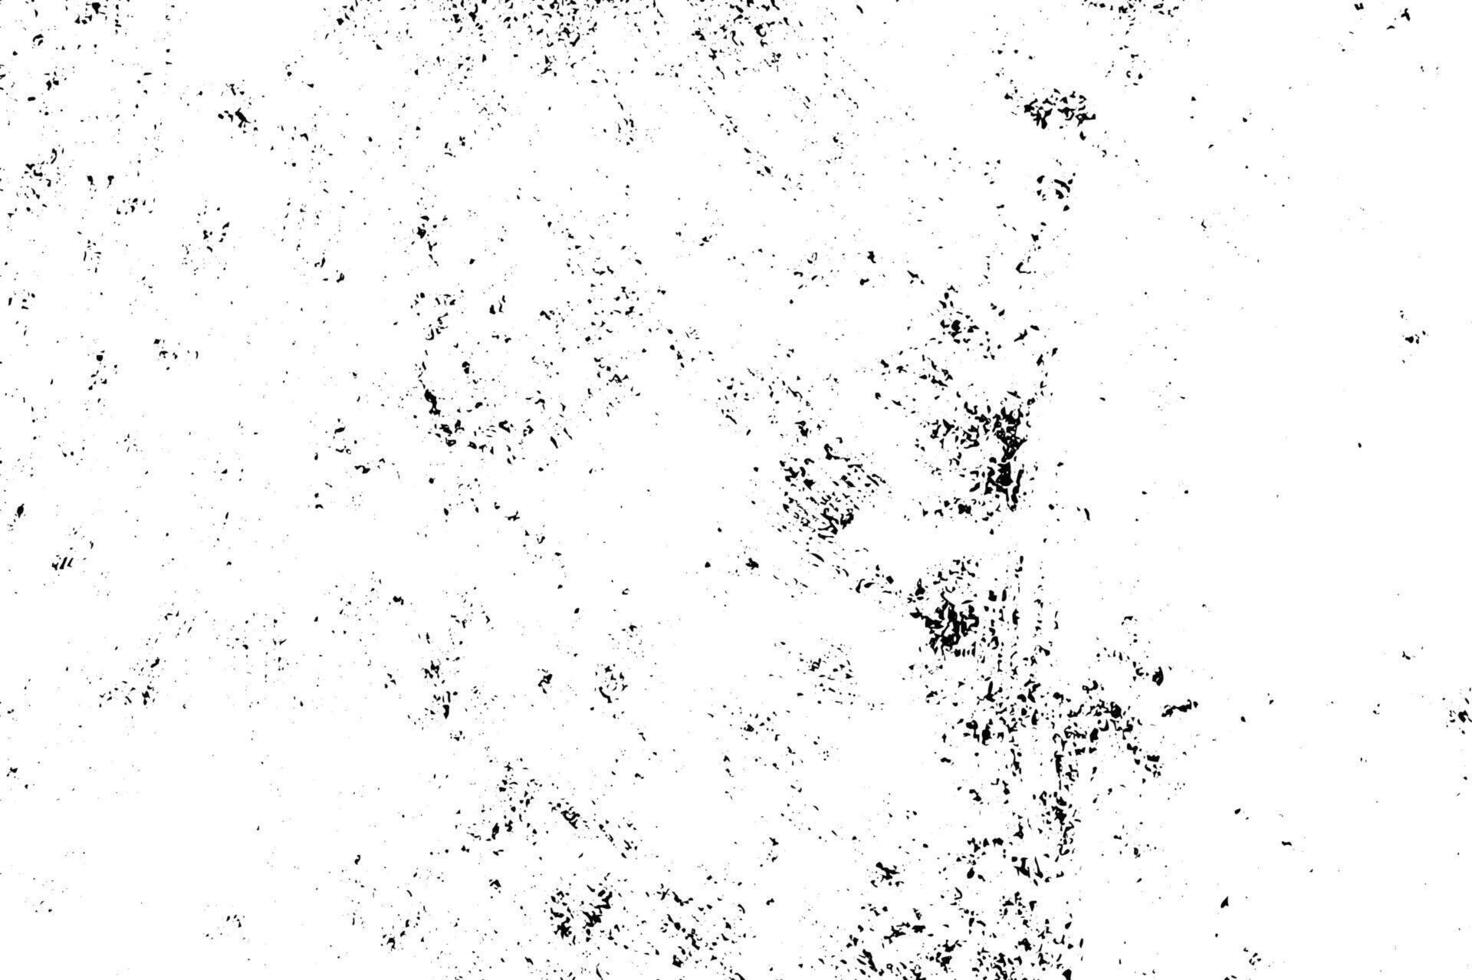 bakgrund av svart och vit textur. abstrakt svartvit mönster av fläckar, sprickor, prickar, pommes frites. vektor